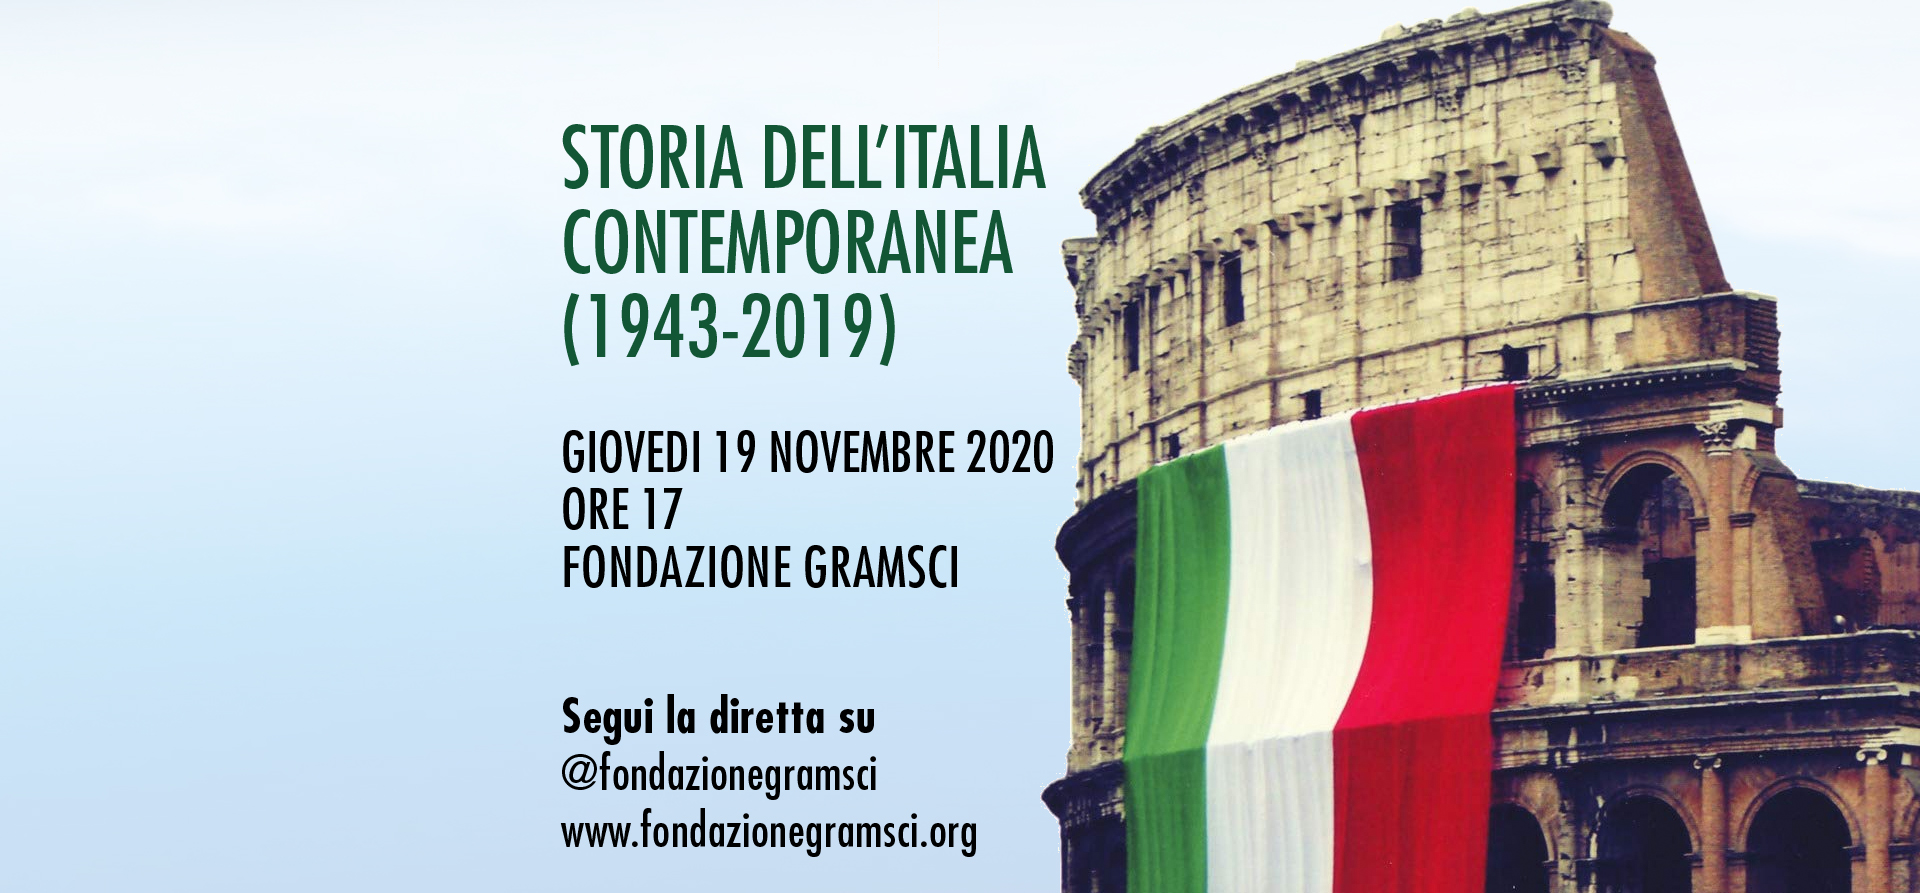 STORIA DELL’ITALIA CONTEMPORANEA (1943-2019)